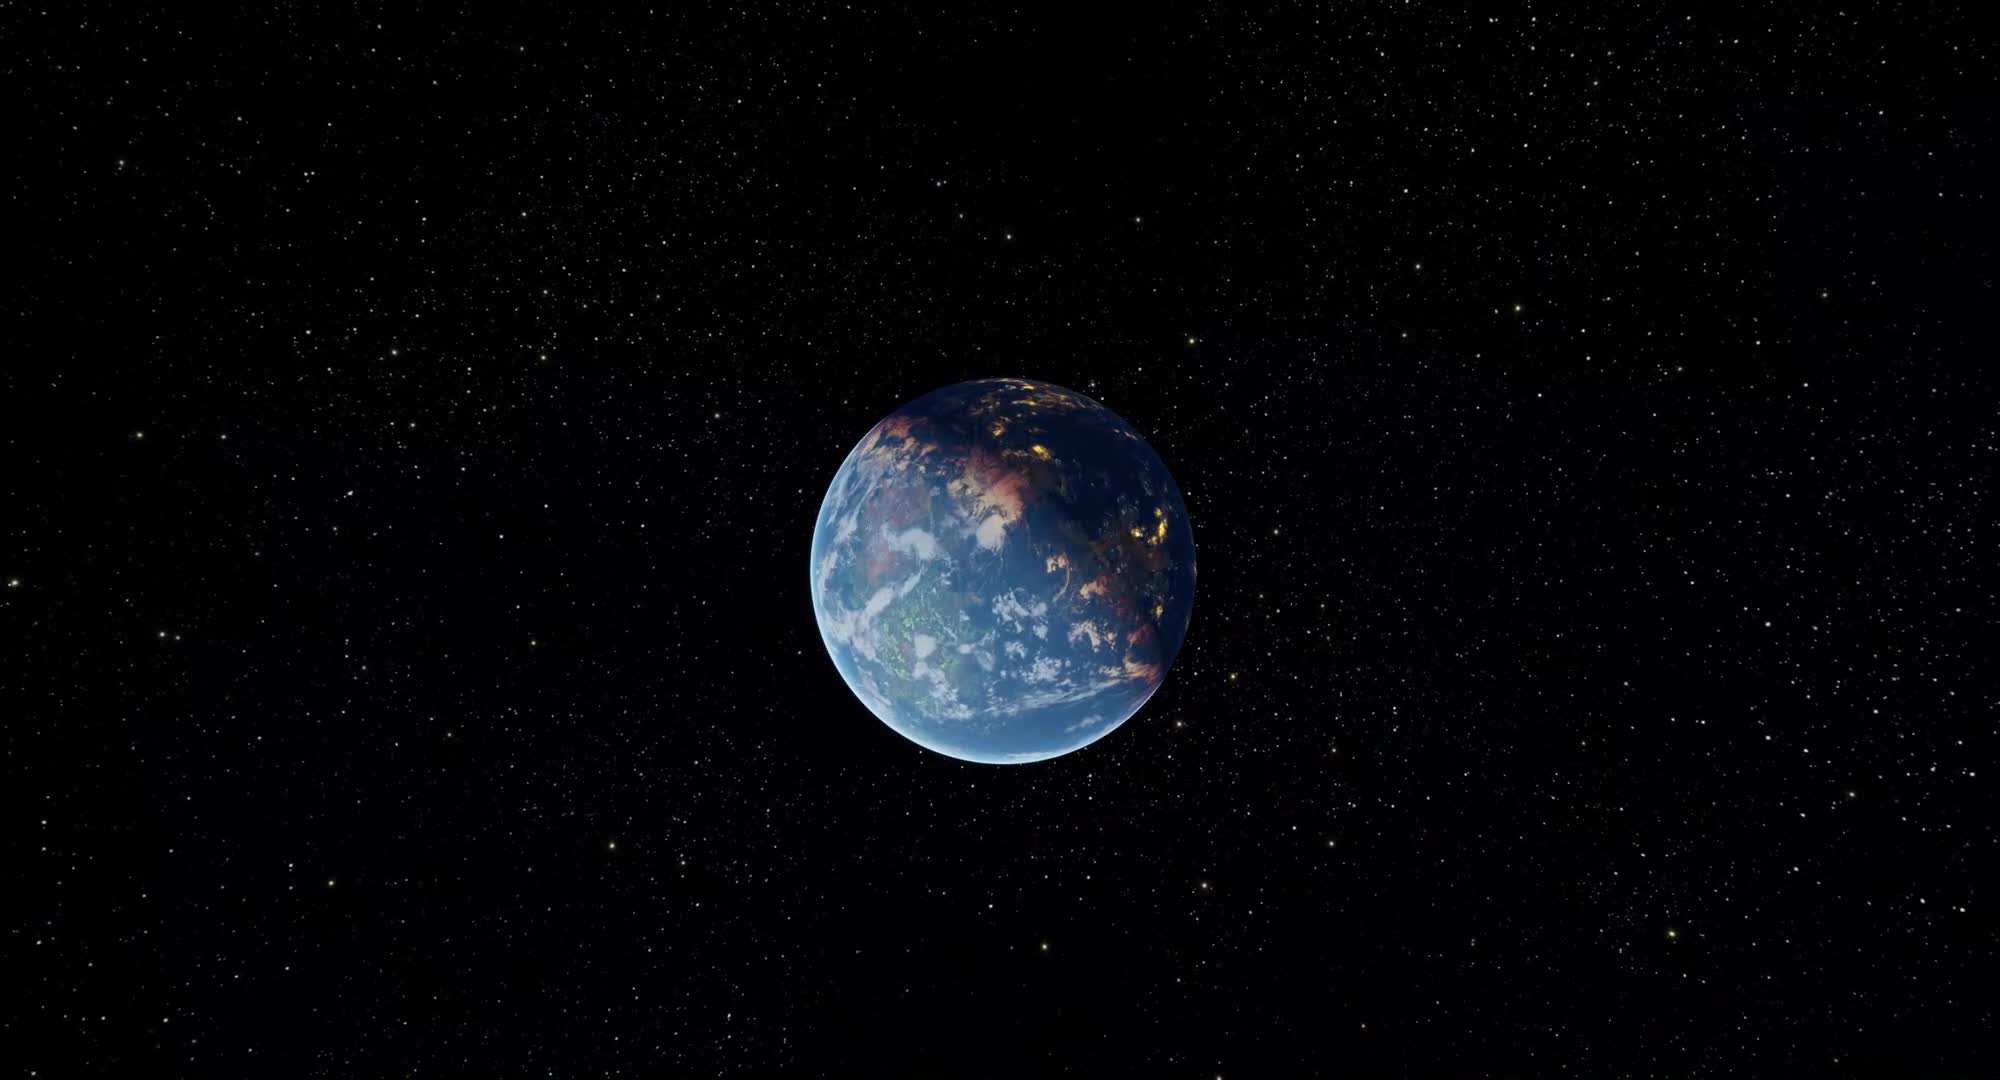 地球